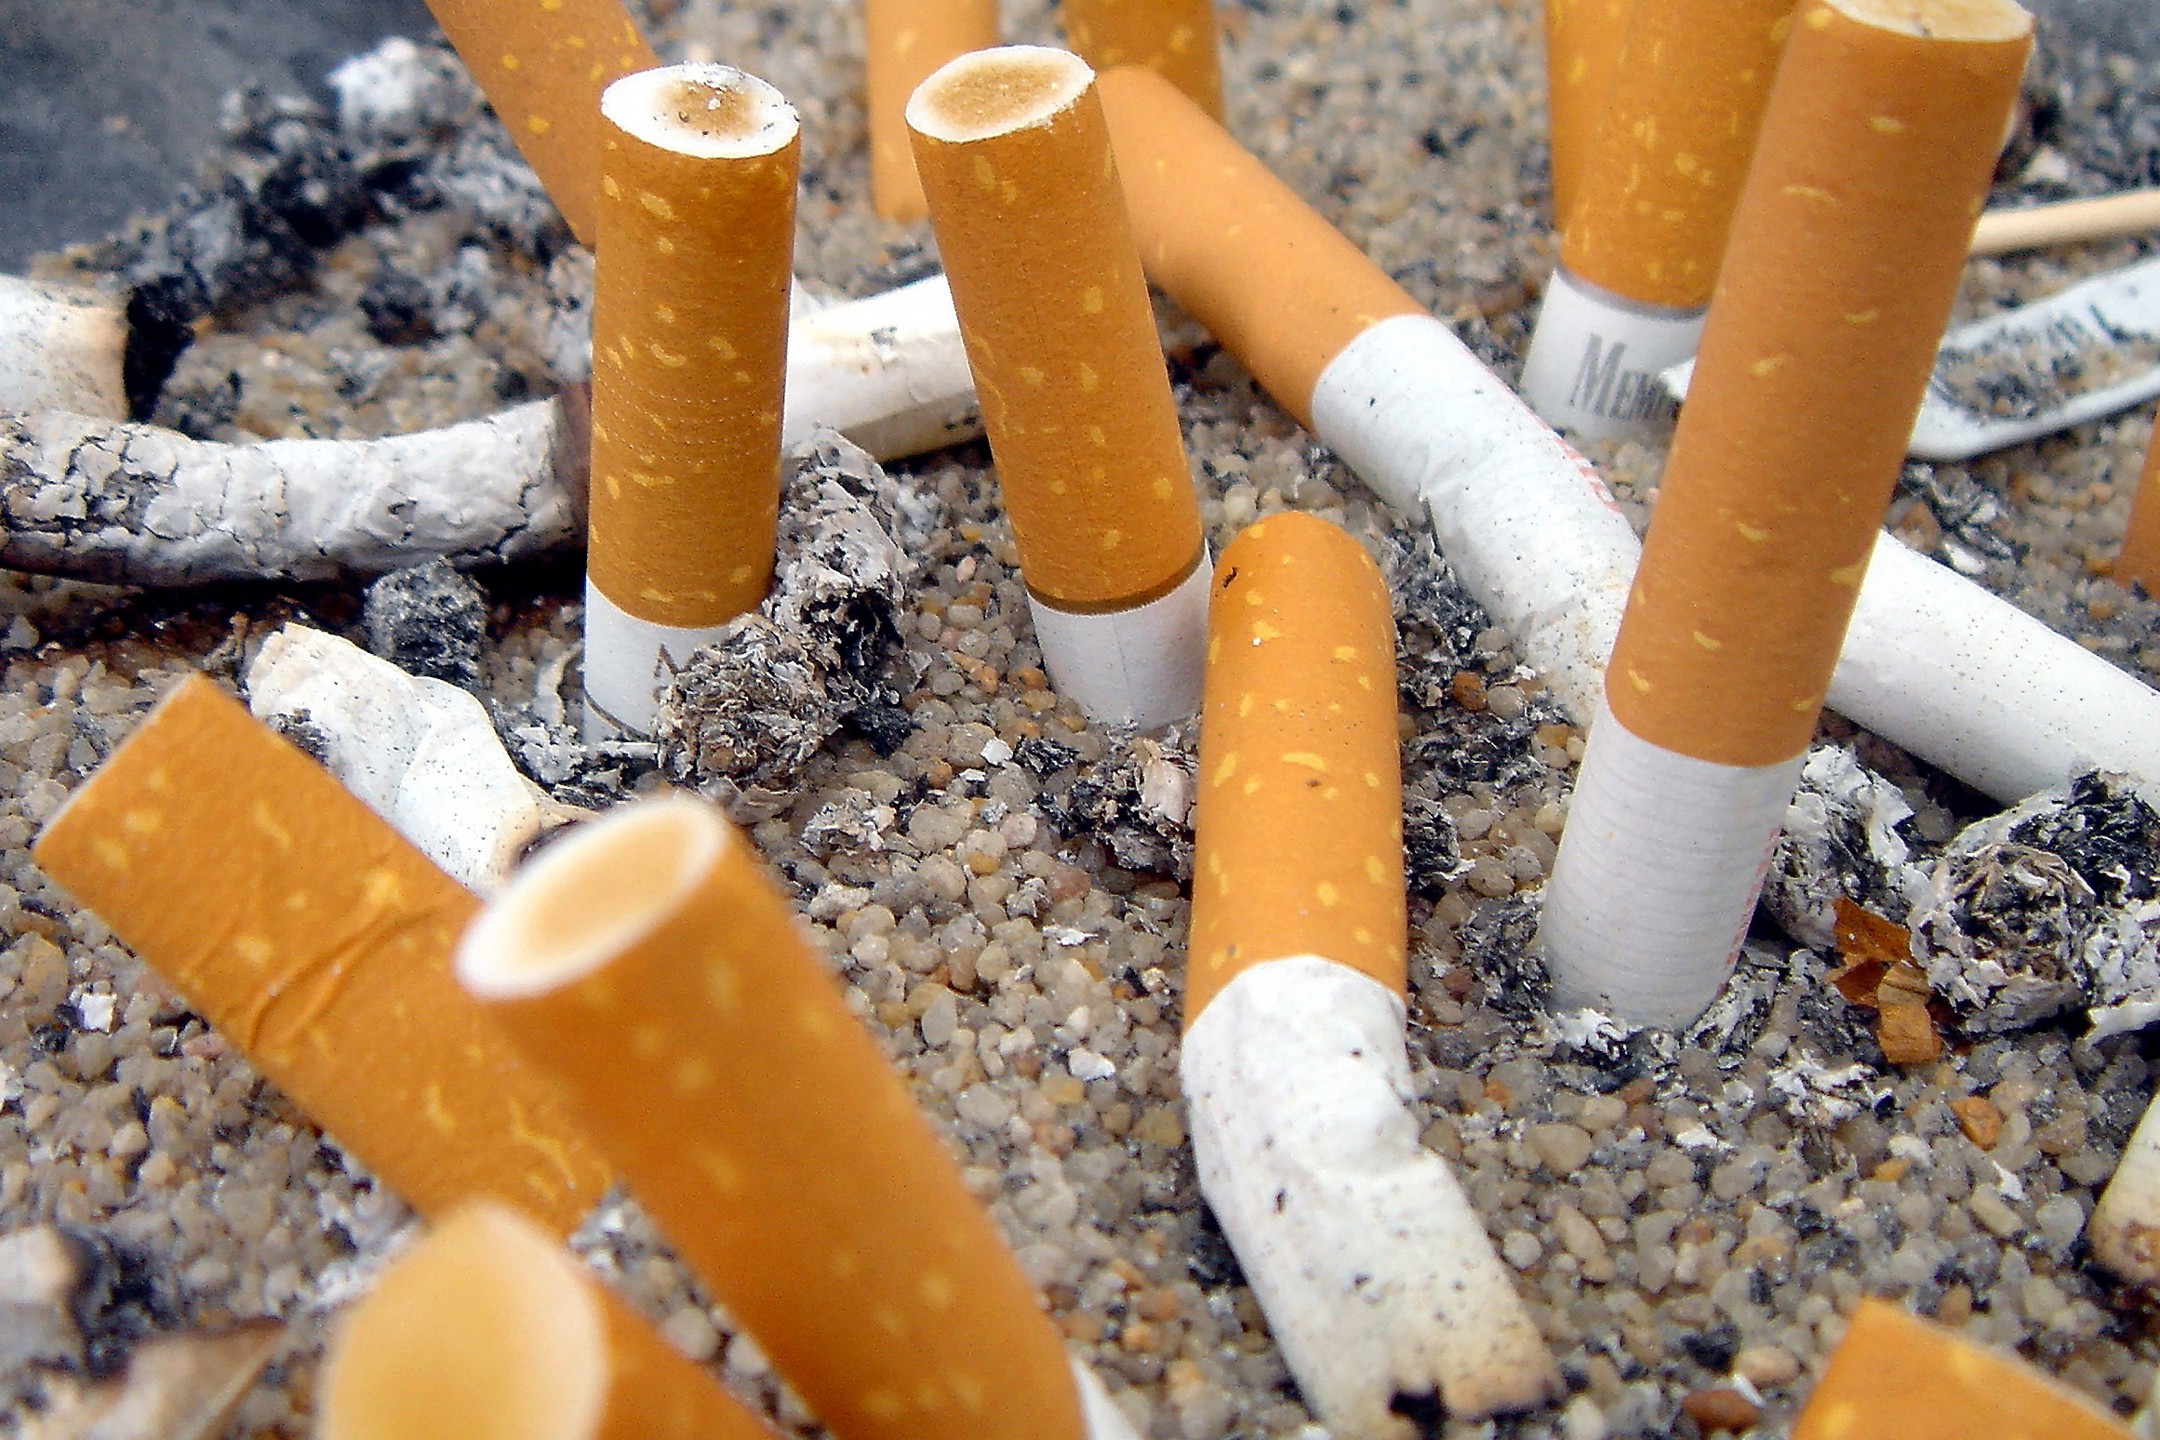 Dailystorm - Минфин РФ отказался поддержать введение единой минимальной цены на сигареты